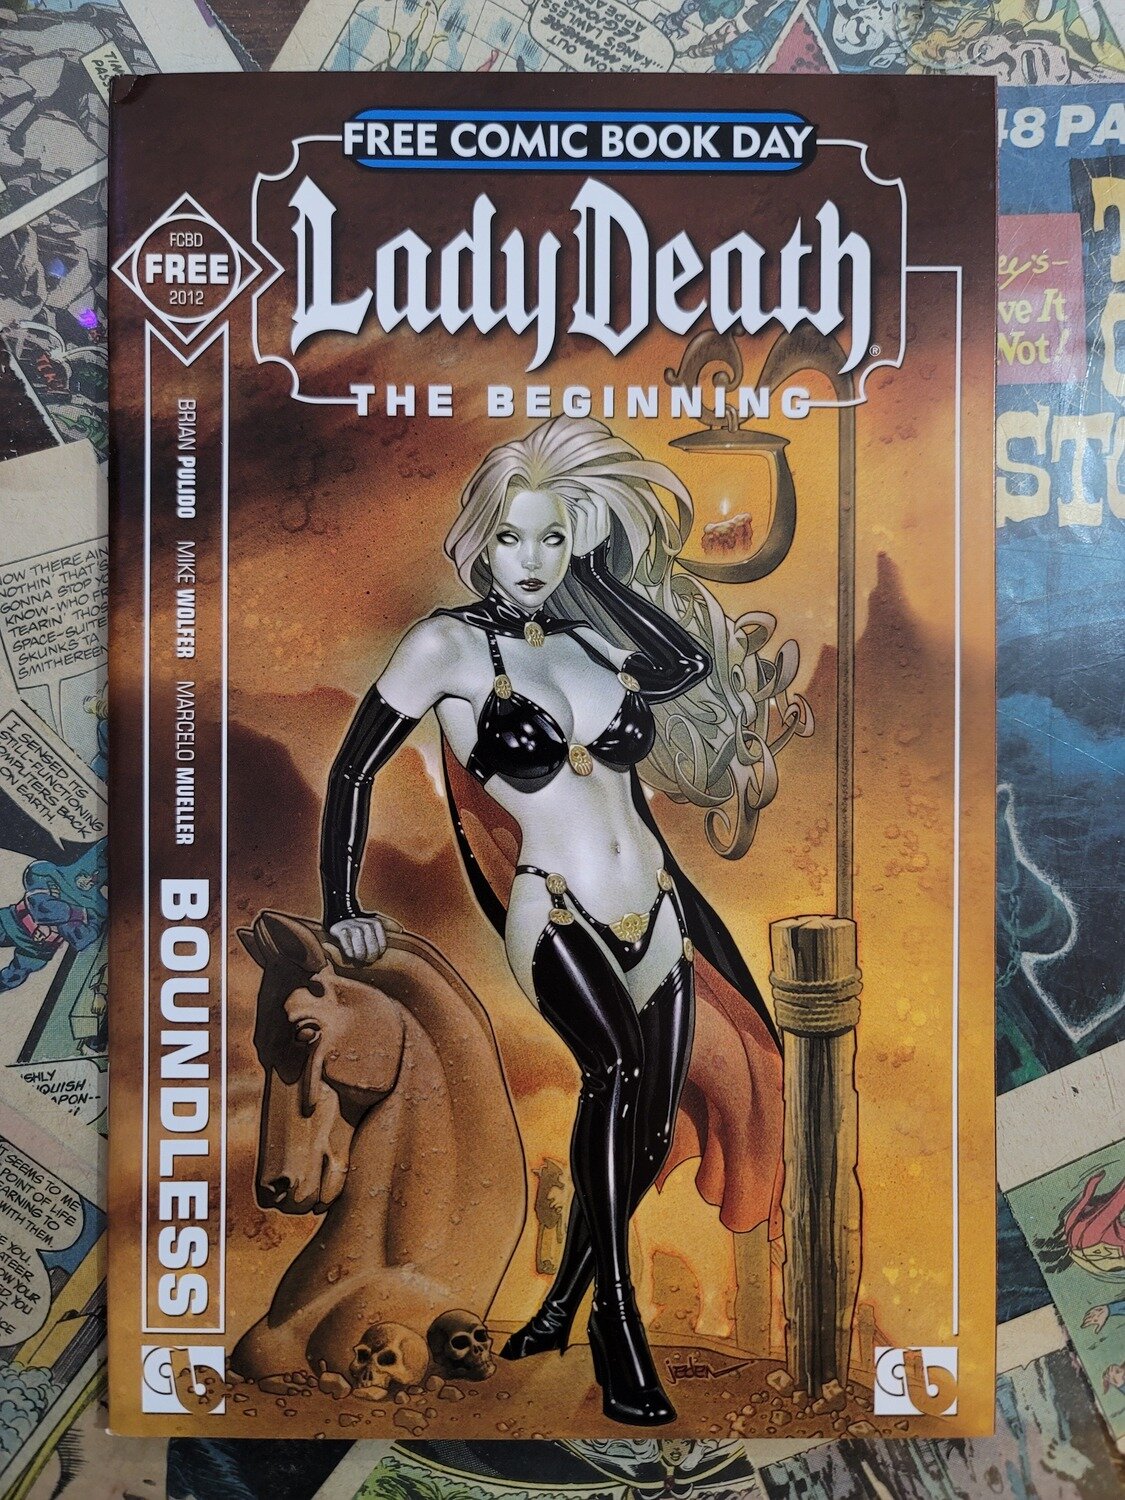 Lady Death FCBD 2012 7.0